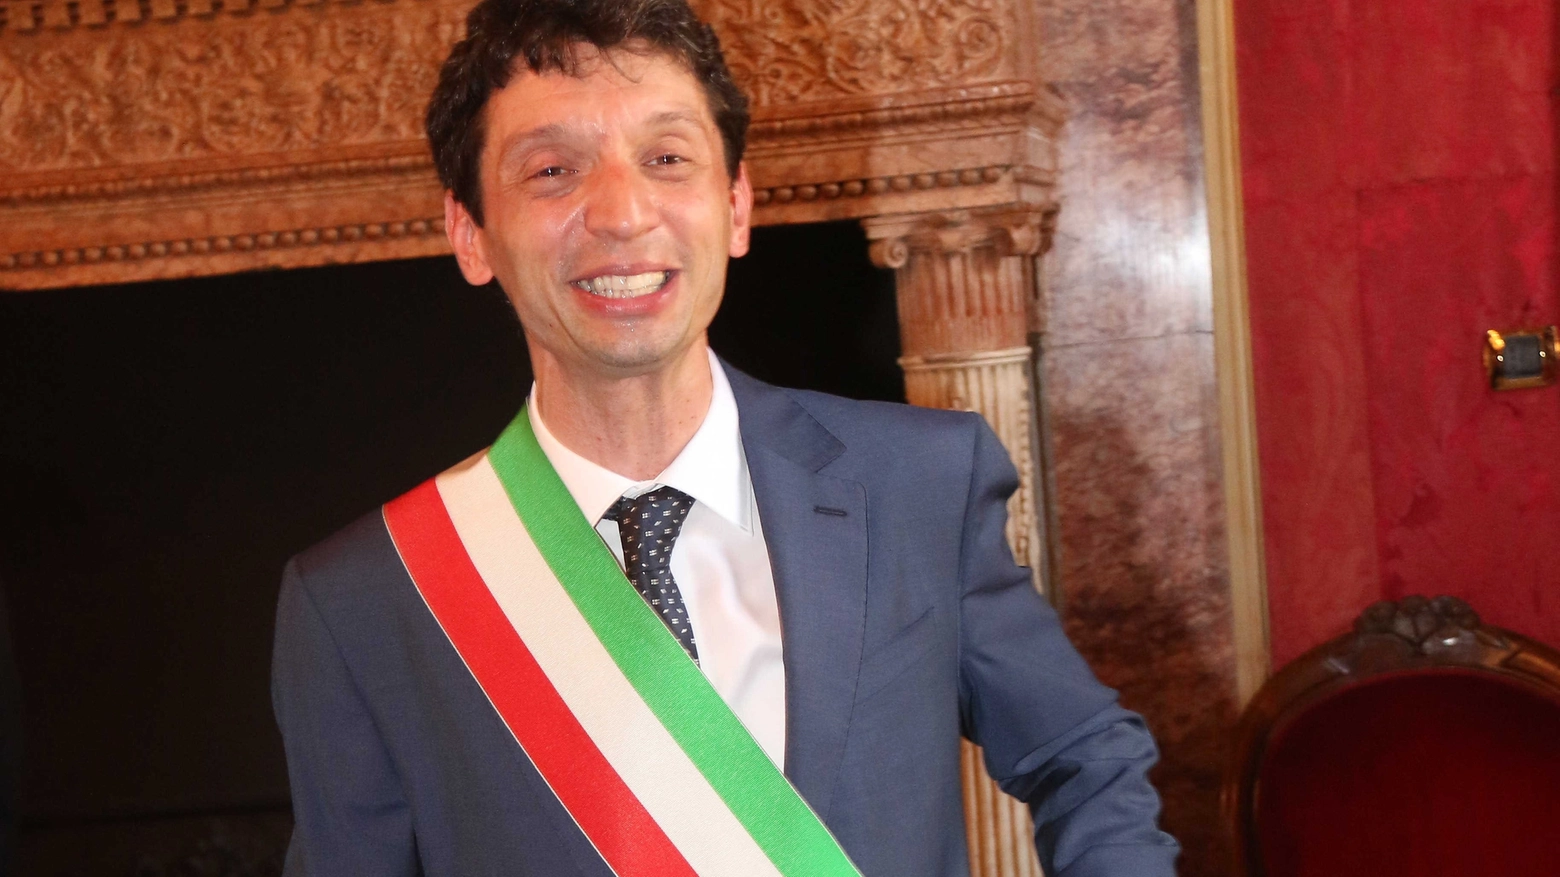 Il sindaco di Cremona occupa la 63esima posizione insieme a quello di Pavia